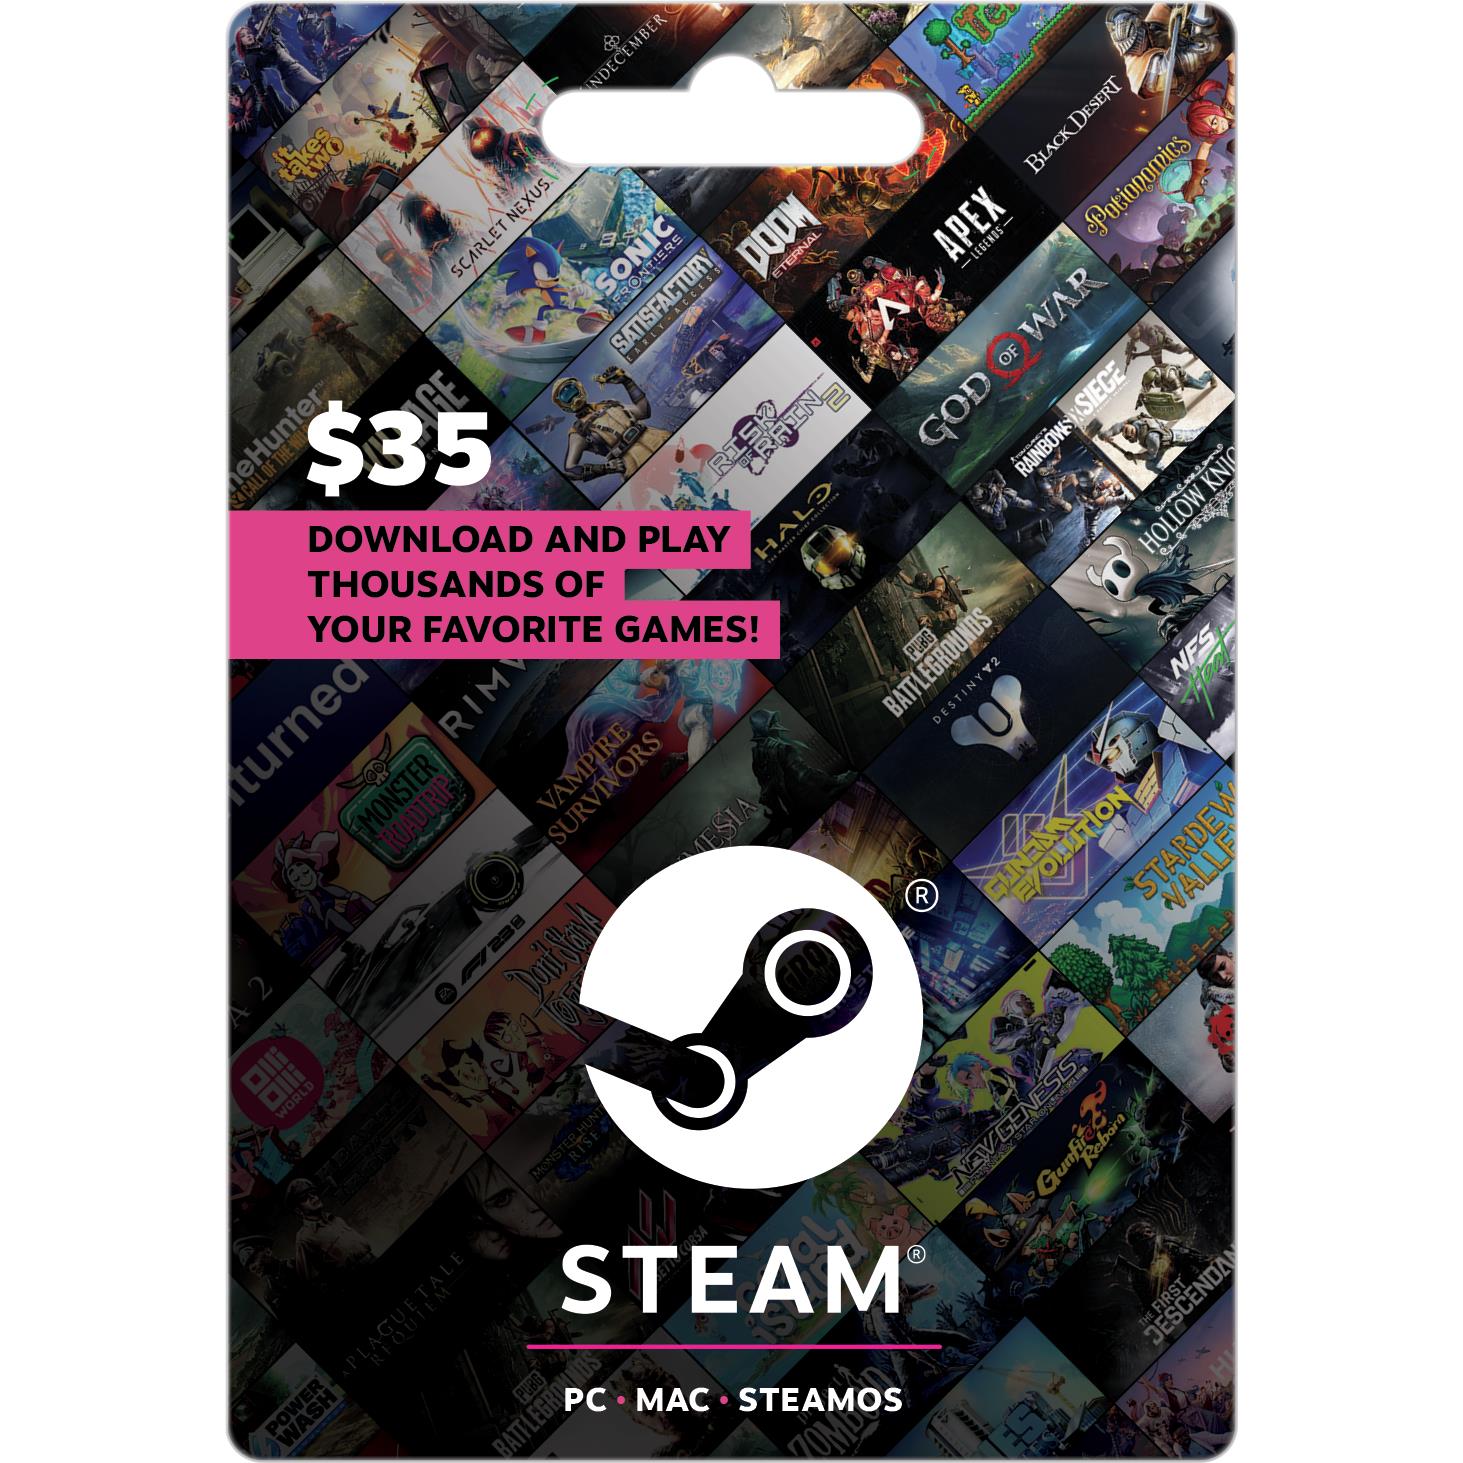 Steam $35 NZD - Digital Processing Fee Included